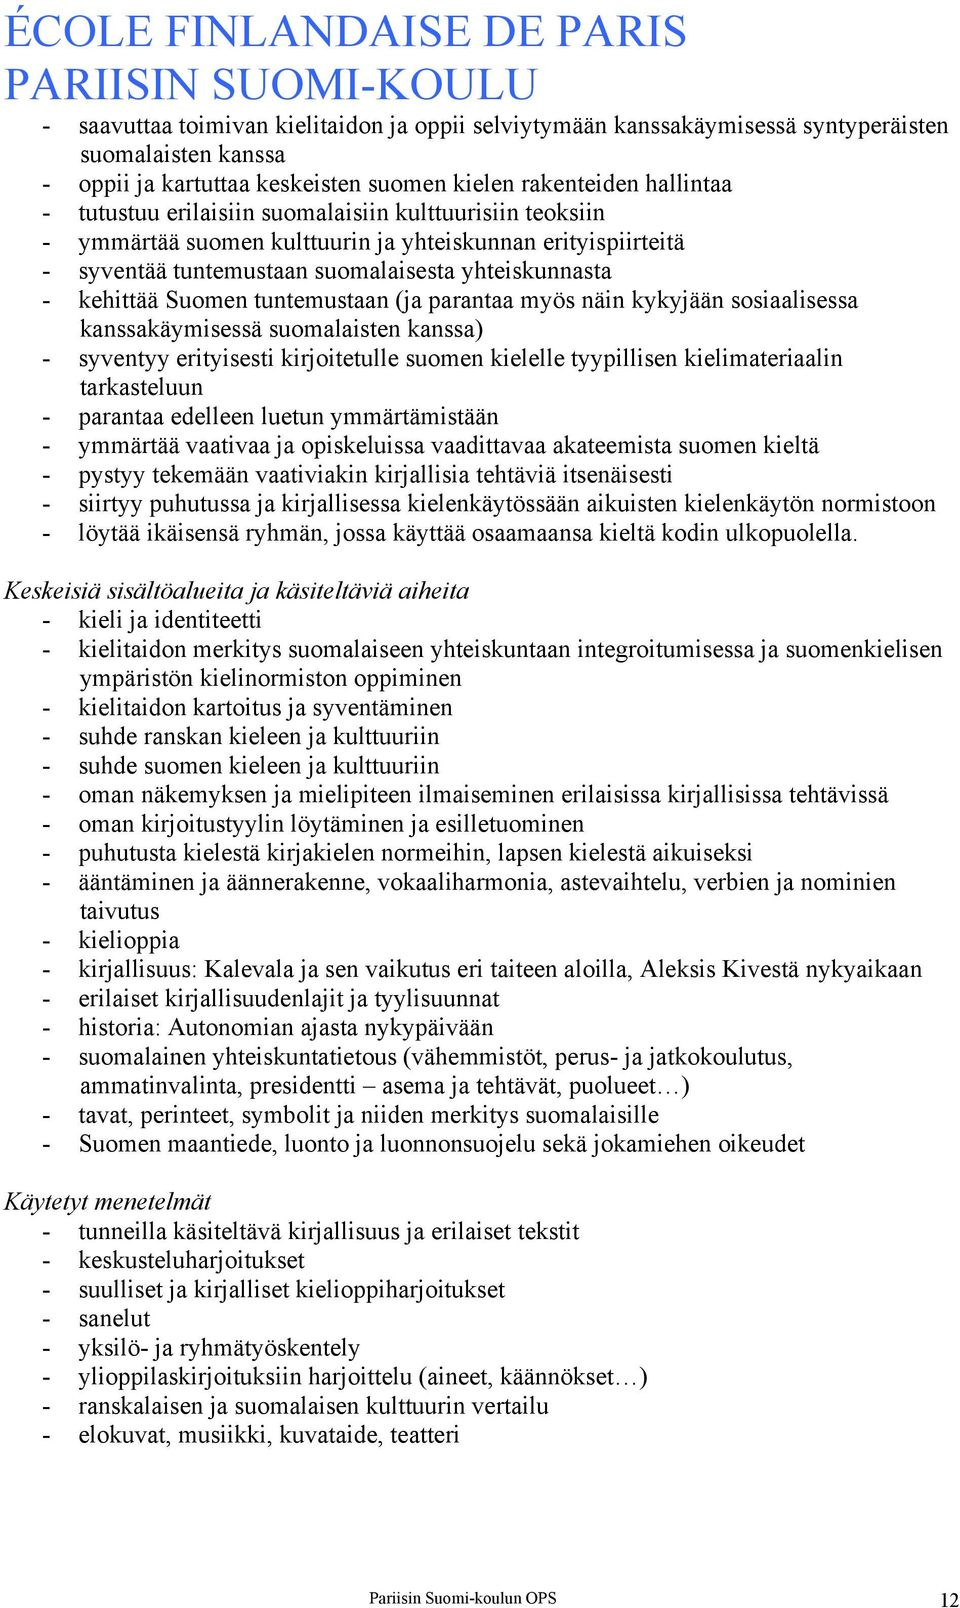 näin kykyjään sosiaalisessa kanssakäymisessä suomalaisten kanssa) - syventyy erityisesti kirjoitetulle suomen kielelle tyypillisen kielimateriaalin tarkasteluun - parantaa edelleen luetun